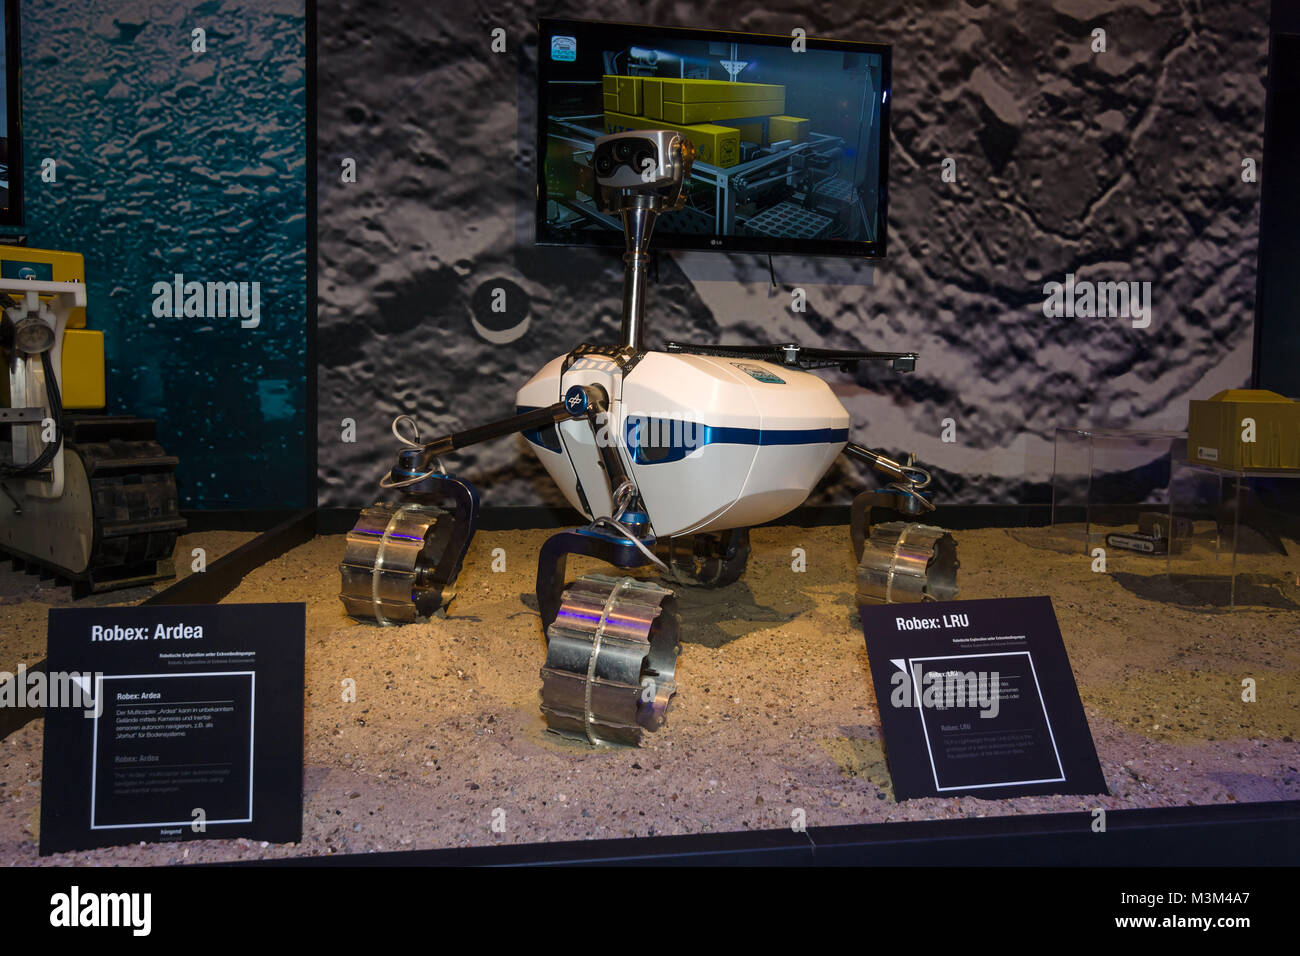 BERLIN, DEUTSCHLAND - Juni 01, 2016: Der Prototyp der Mond Rover' Robex LRU'. Der Stand des Deutschen Zentrums für Luft- und Raumfahrt (DLR). Ausstellung die ILA Berlin Air Show 2016 Stockfoto